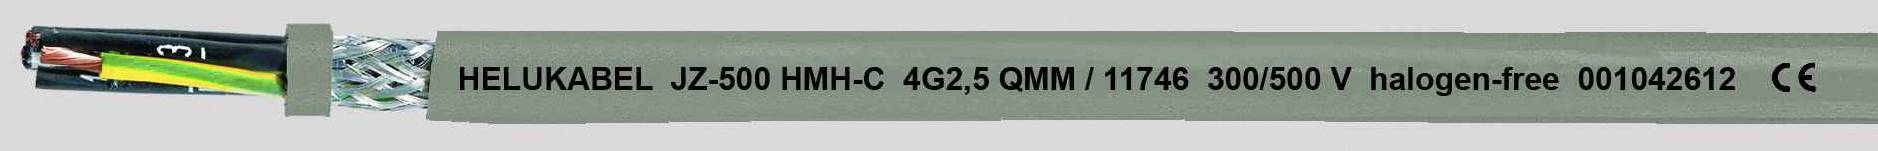 HELUKABEL JZ-500 HMH-C Steuerleitung 4 G 1.50 mm² Grau 11724-500 500 m